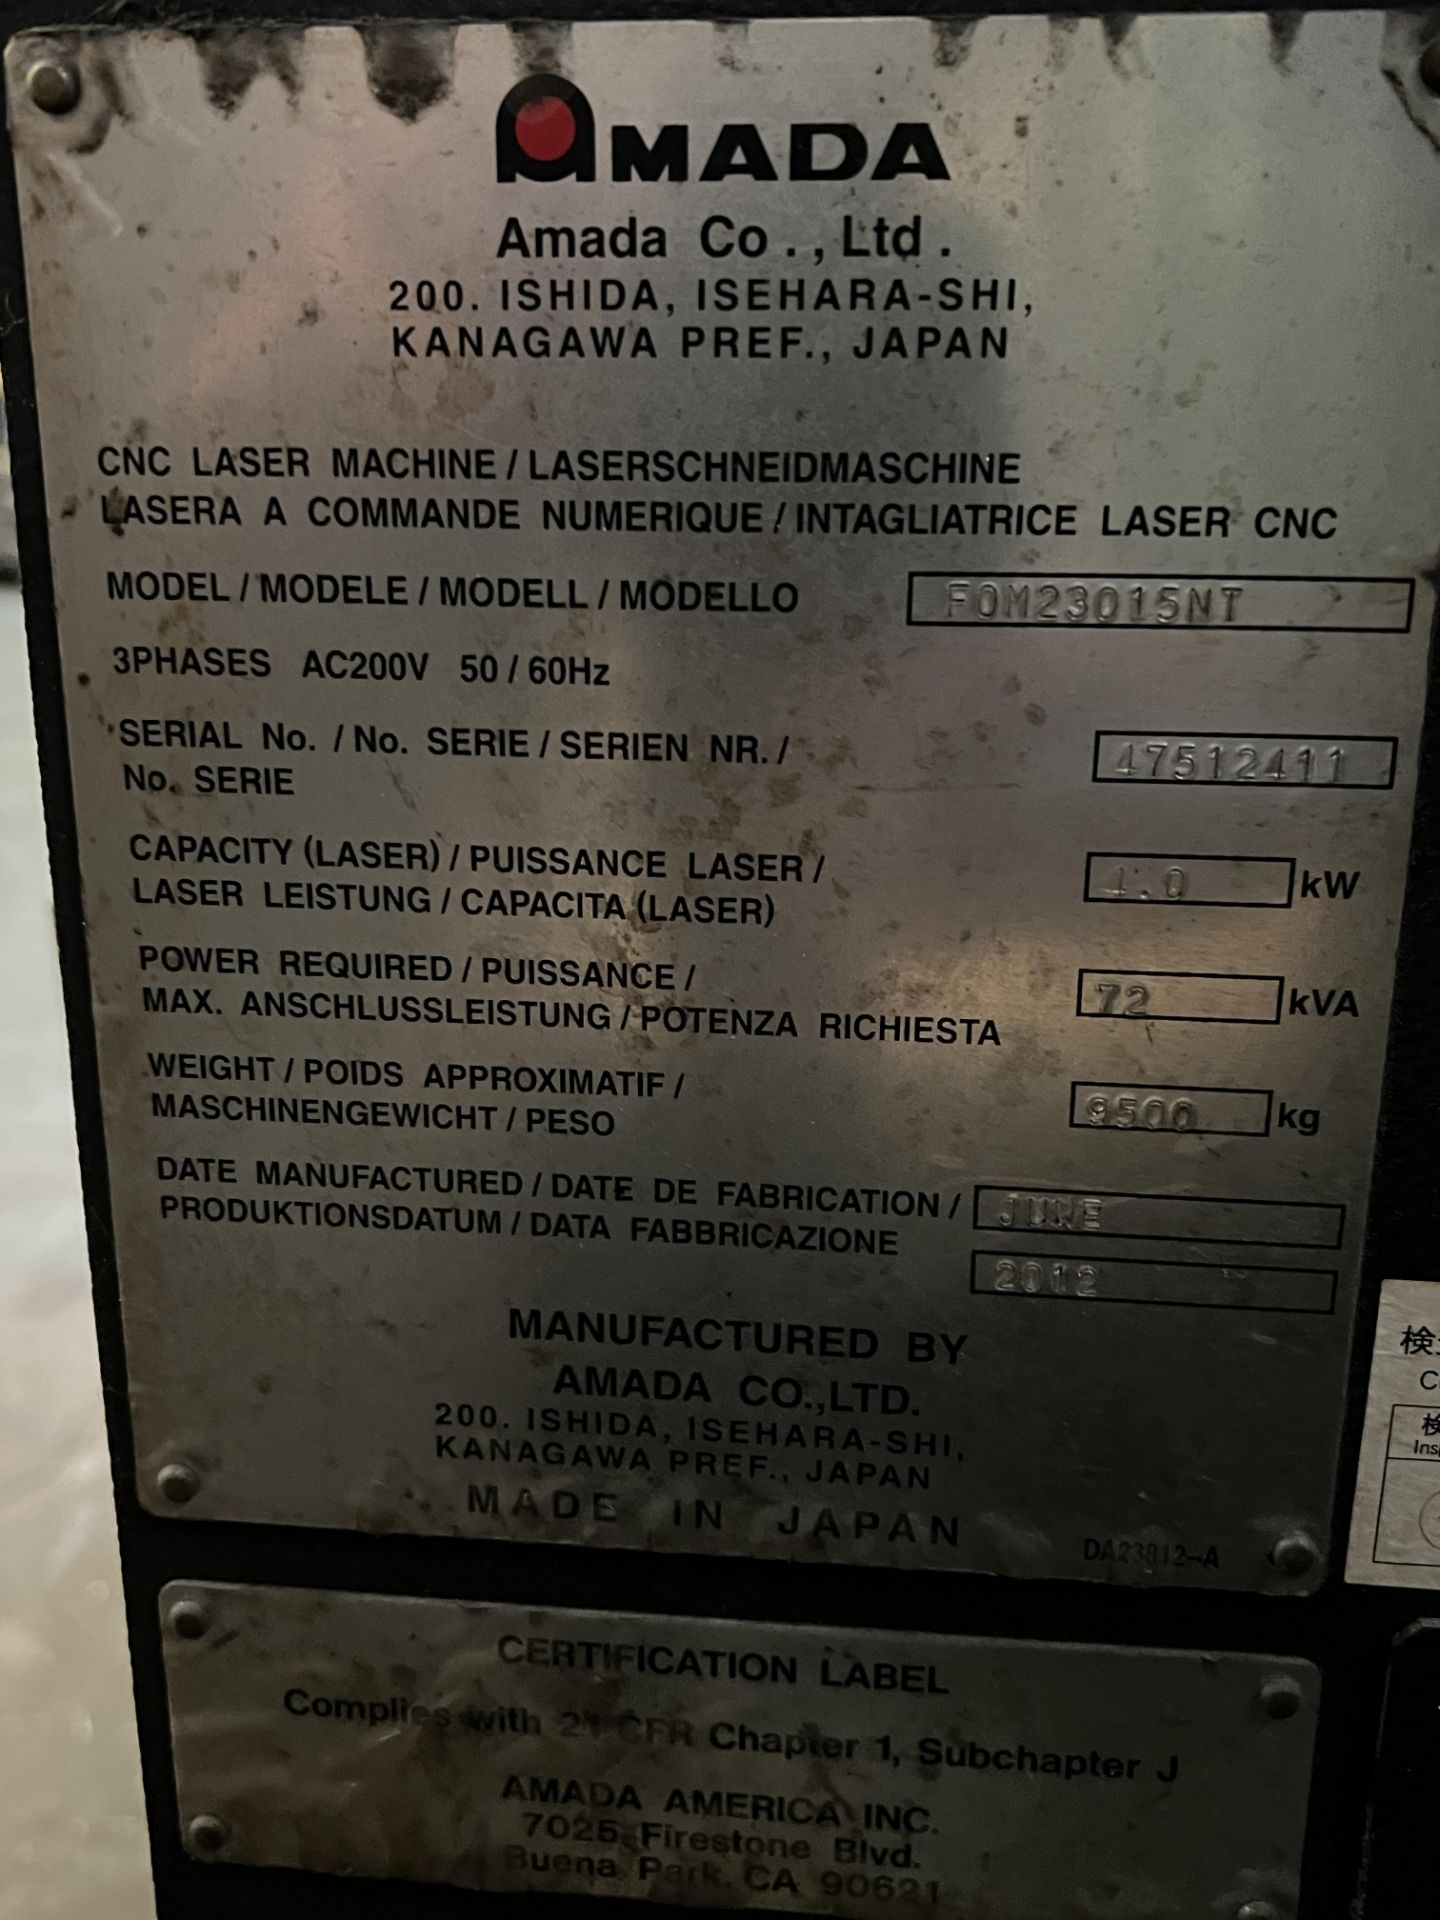 Amada FOM II 3015 NT 4,000 Watt CNC Laser Cutting System, S/N 47512411, 2012 - Image 24 of 26